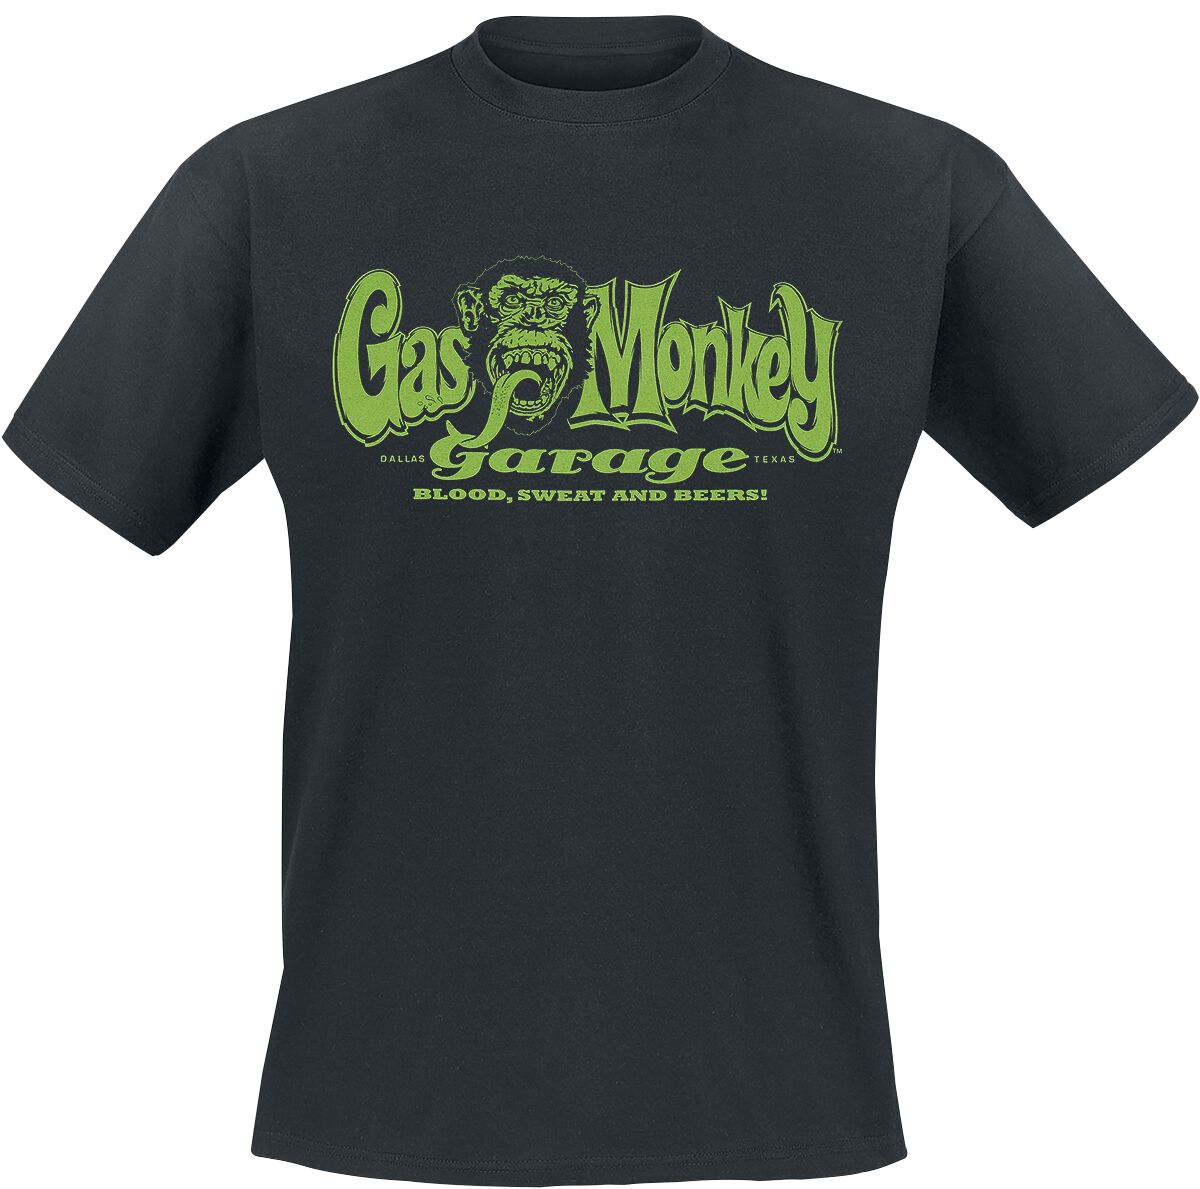 Gas Monkey Garage T-Shirt - Green Script - XXL - für Männer - Größe XXL - schwarz  - Lizenzierter Fanartikel